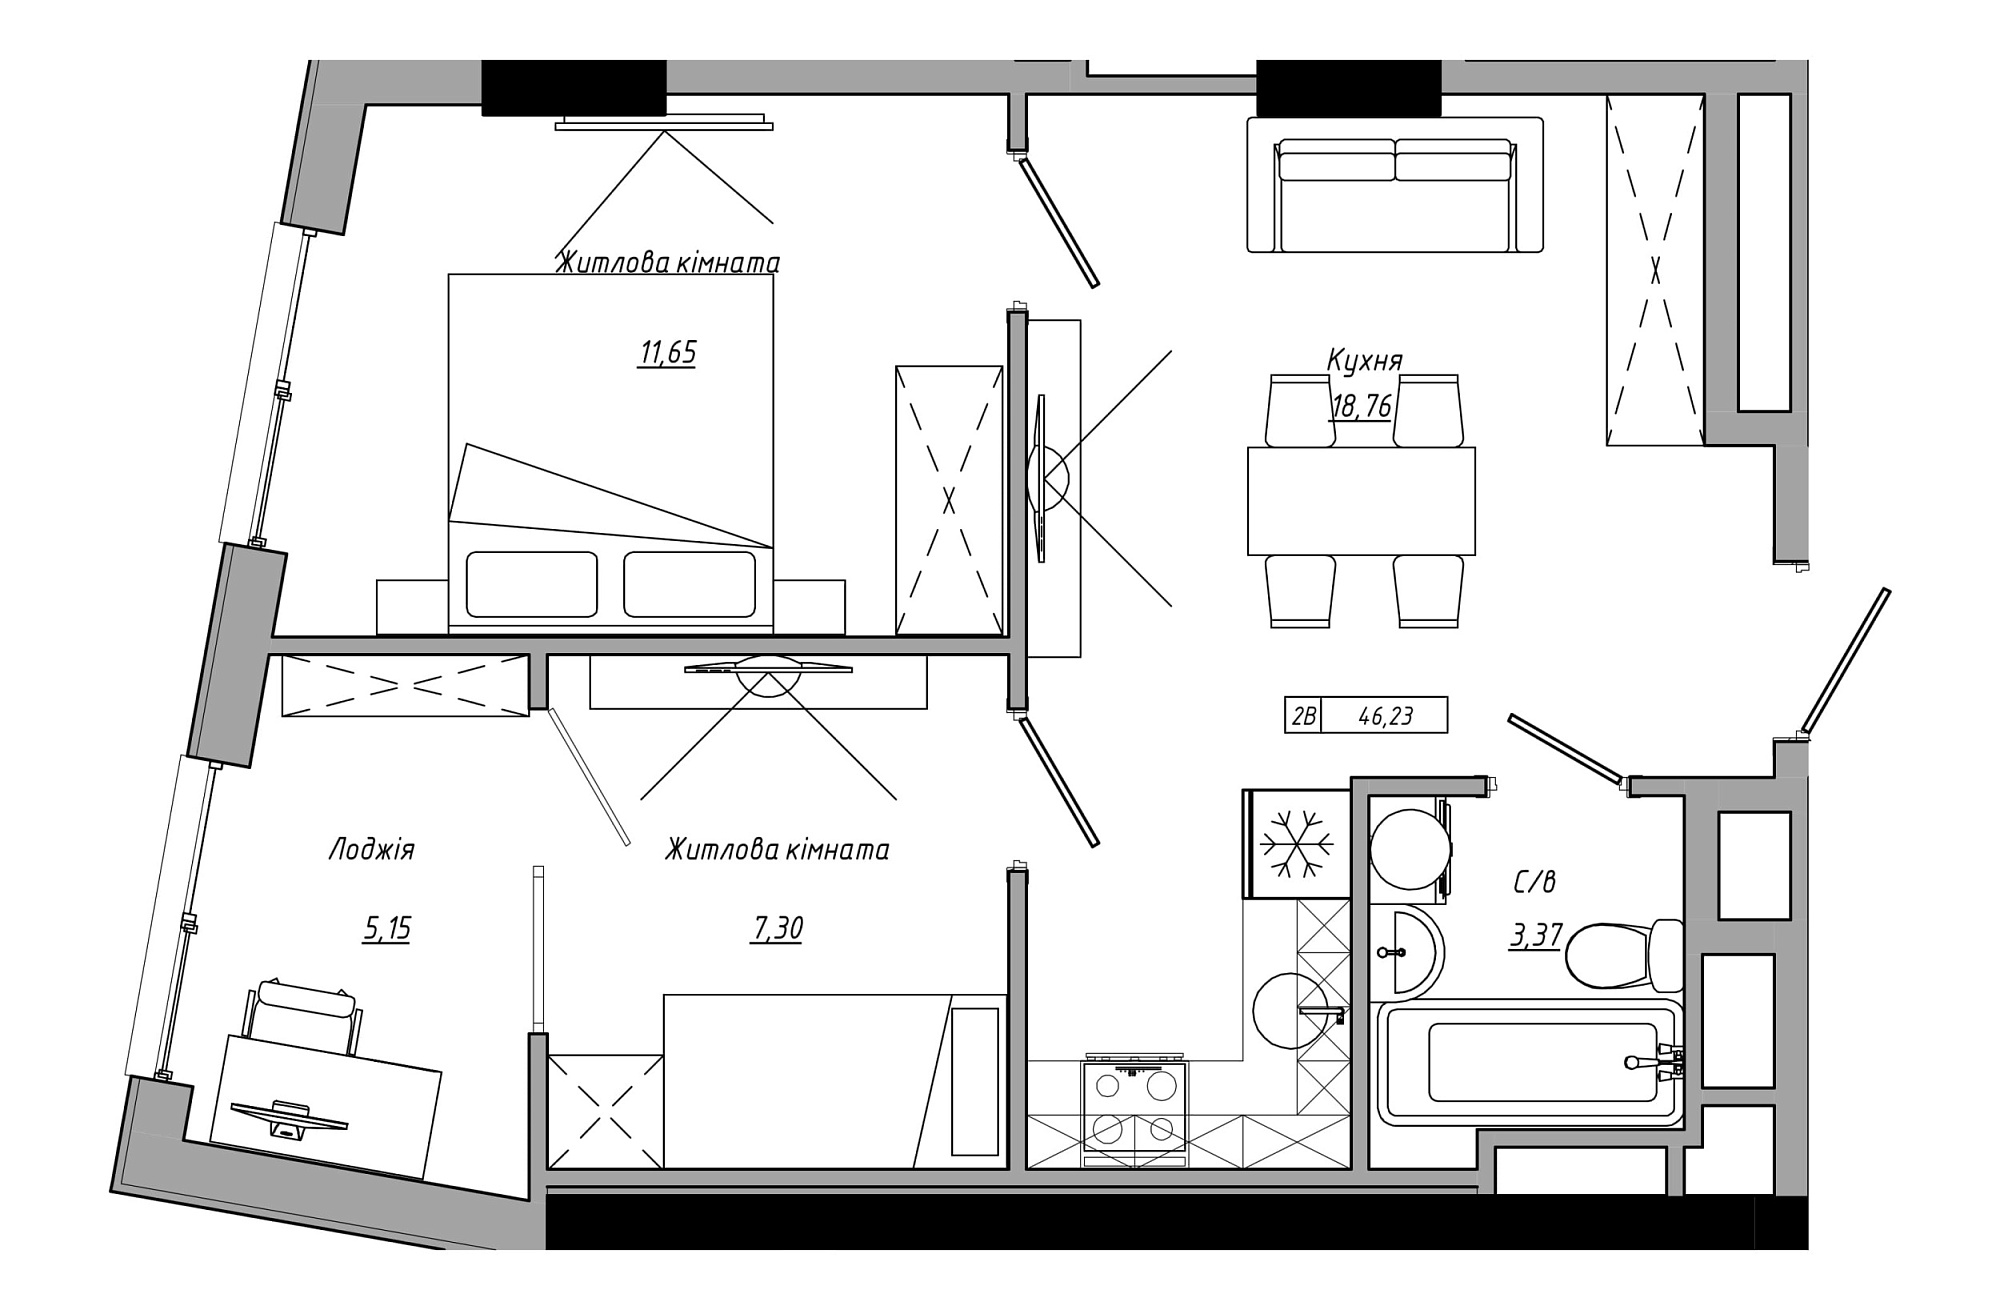 Планування 2-к квартира площею 46.23м2, AB-21-07/00008.